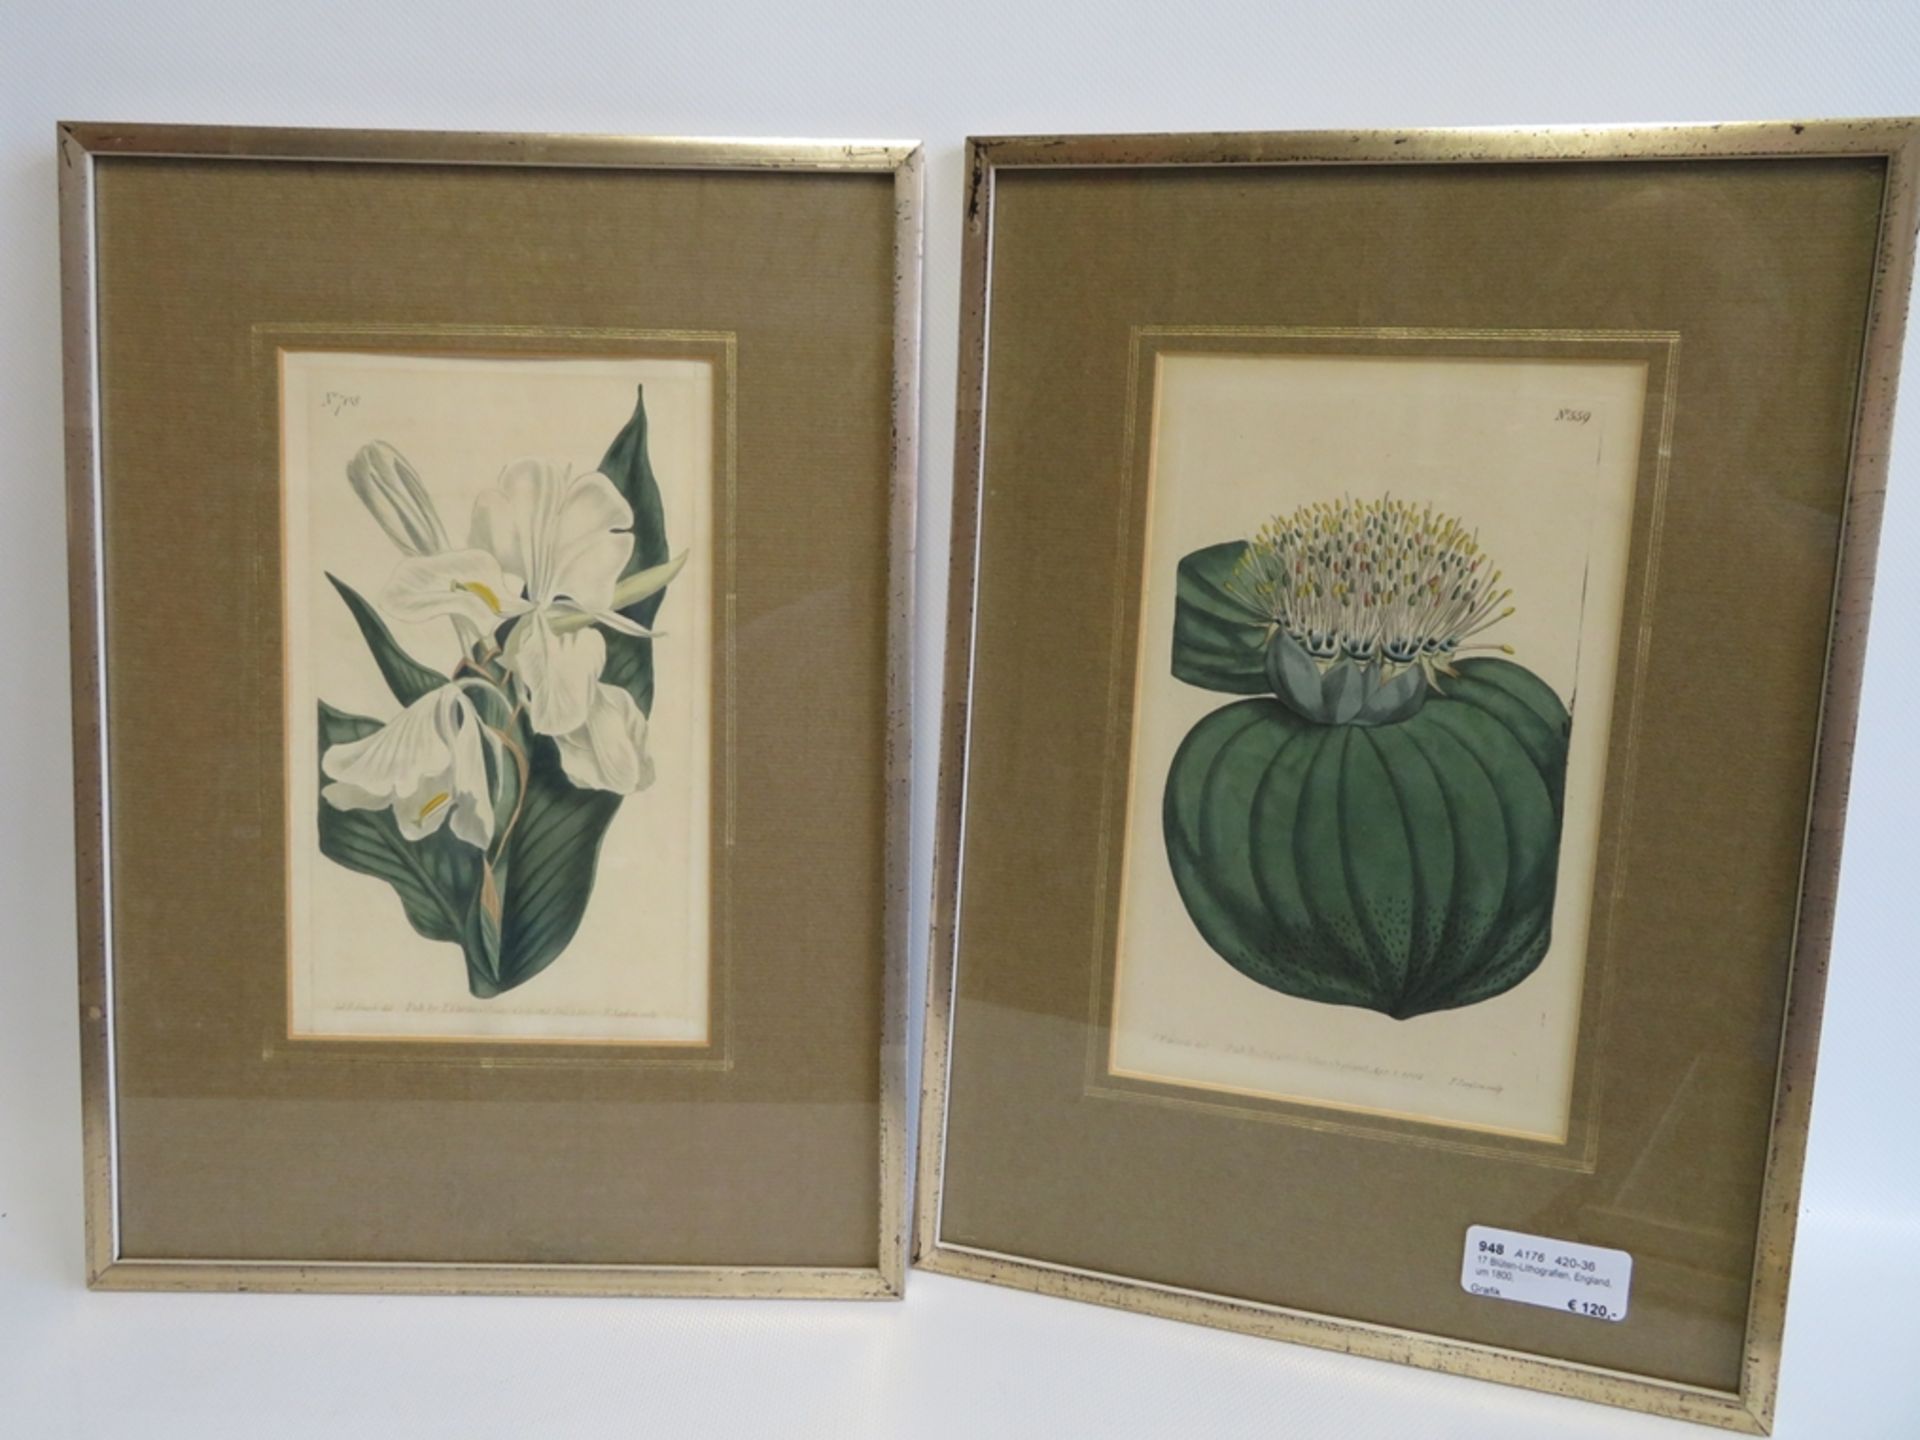 17 Blüten-Lithografien, England, um 1800, altcol., gestochen von F. Sonfom, hrsg. von William - Bild 2 aus 3